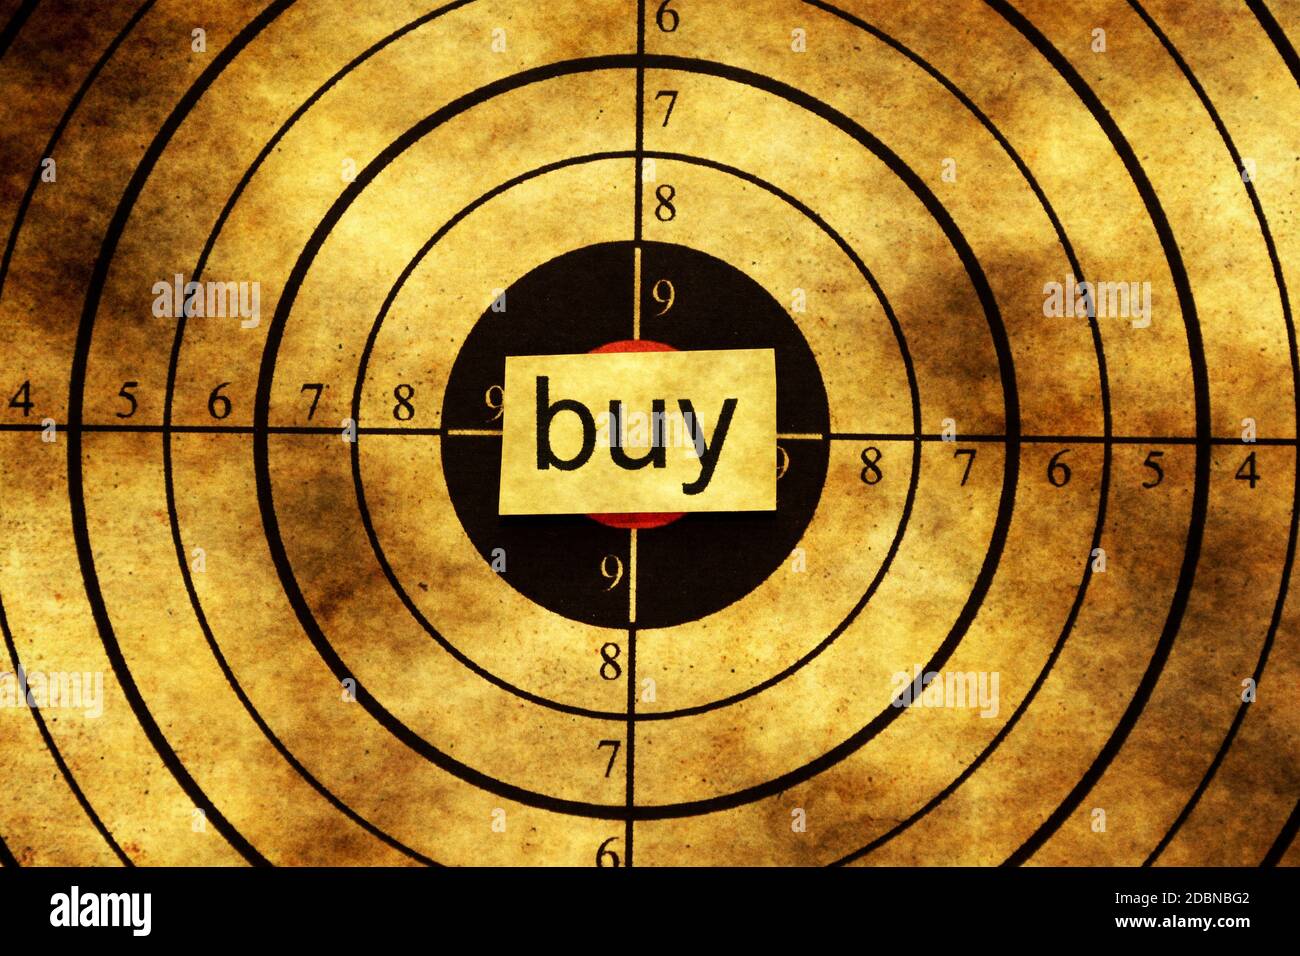 Buy grunge target Stock Photo